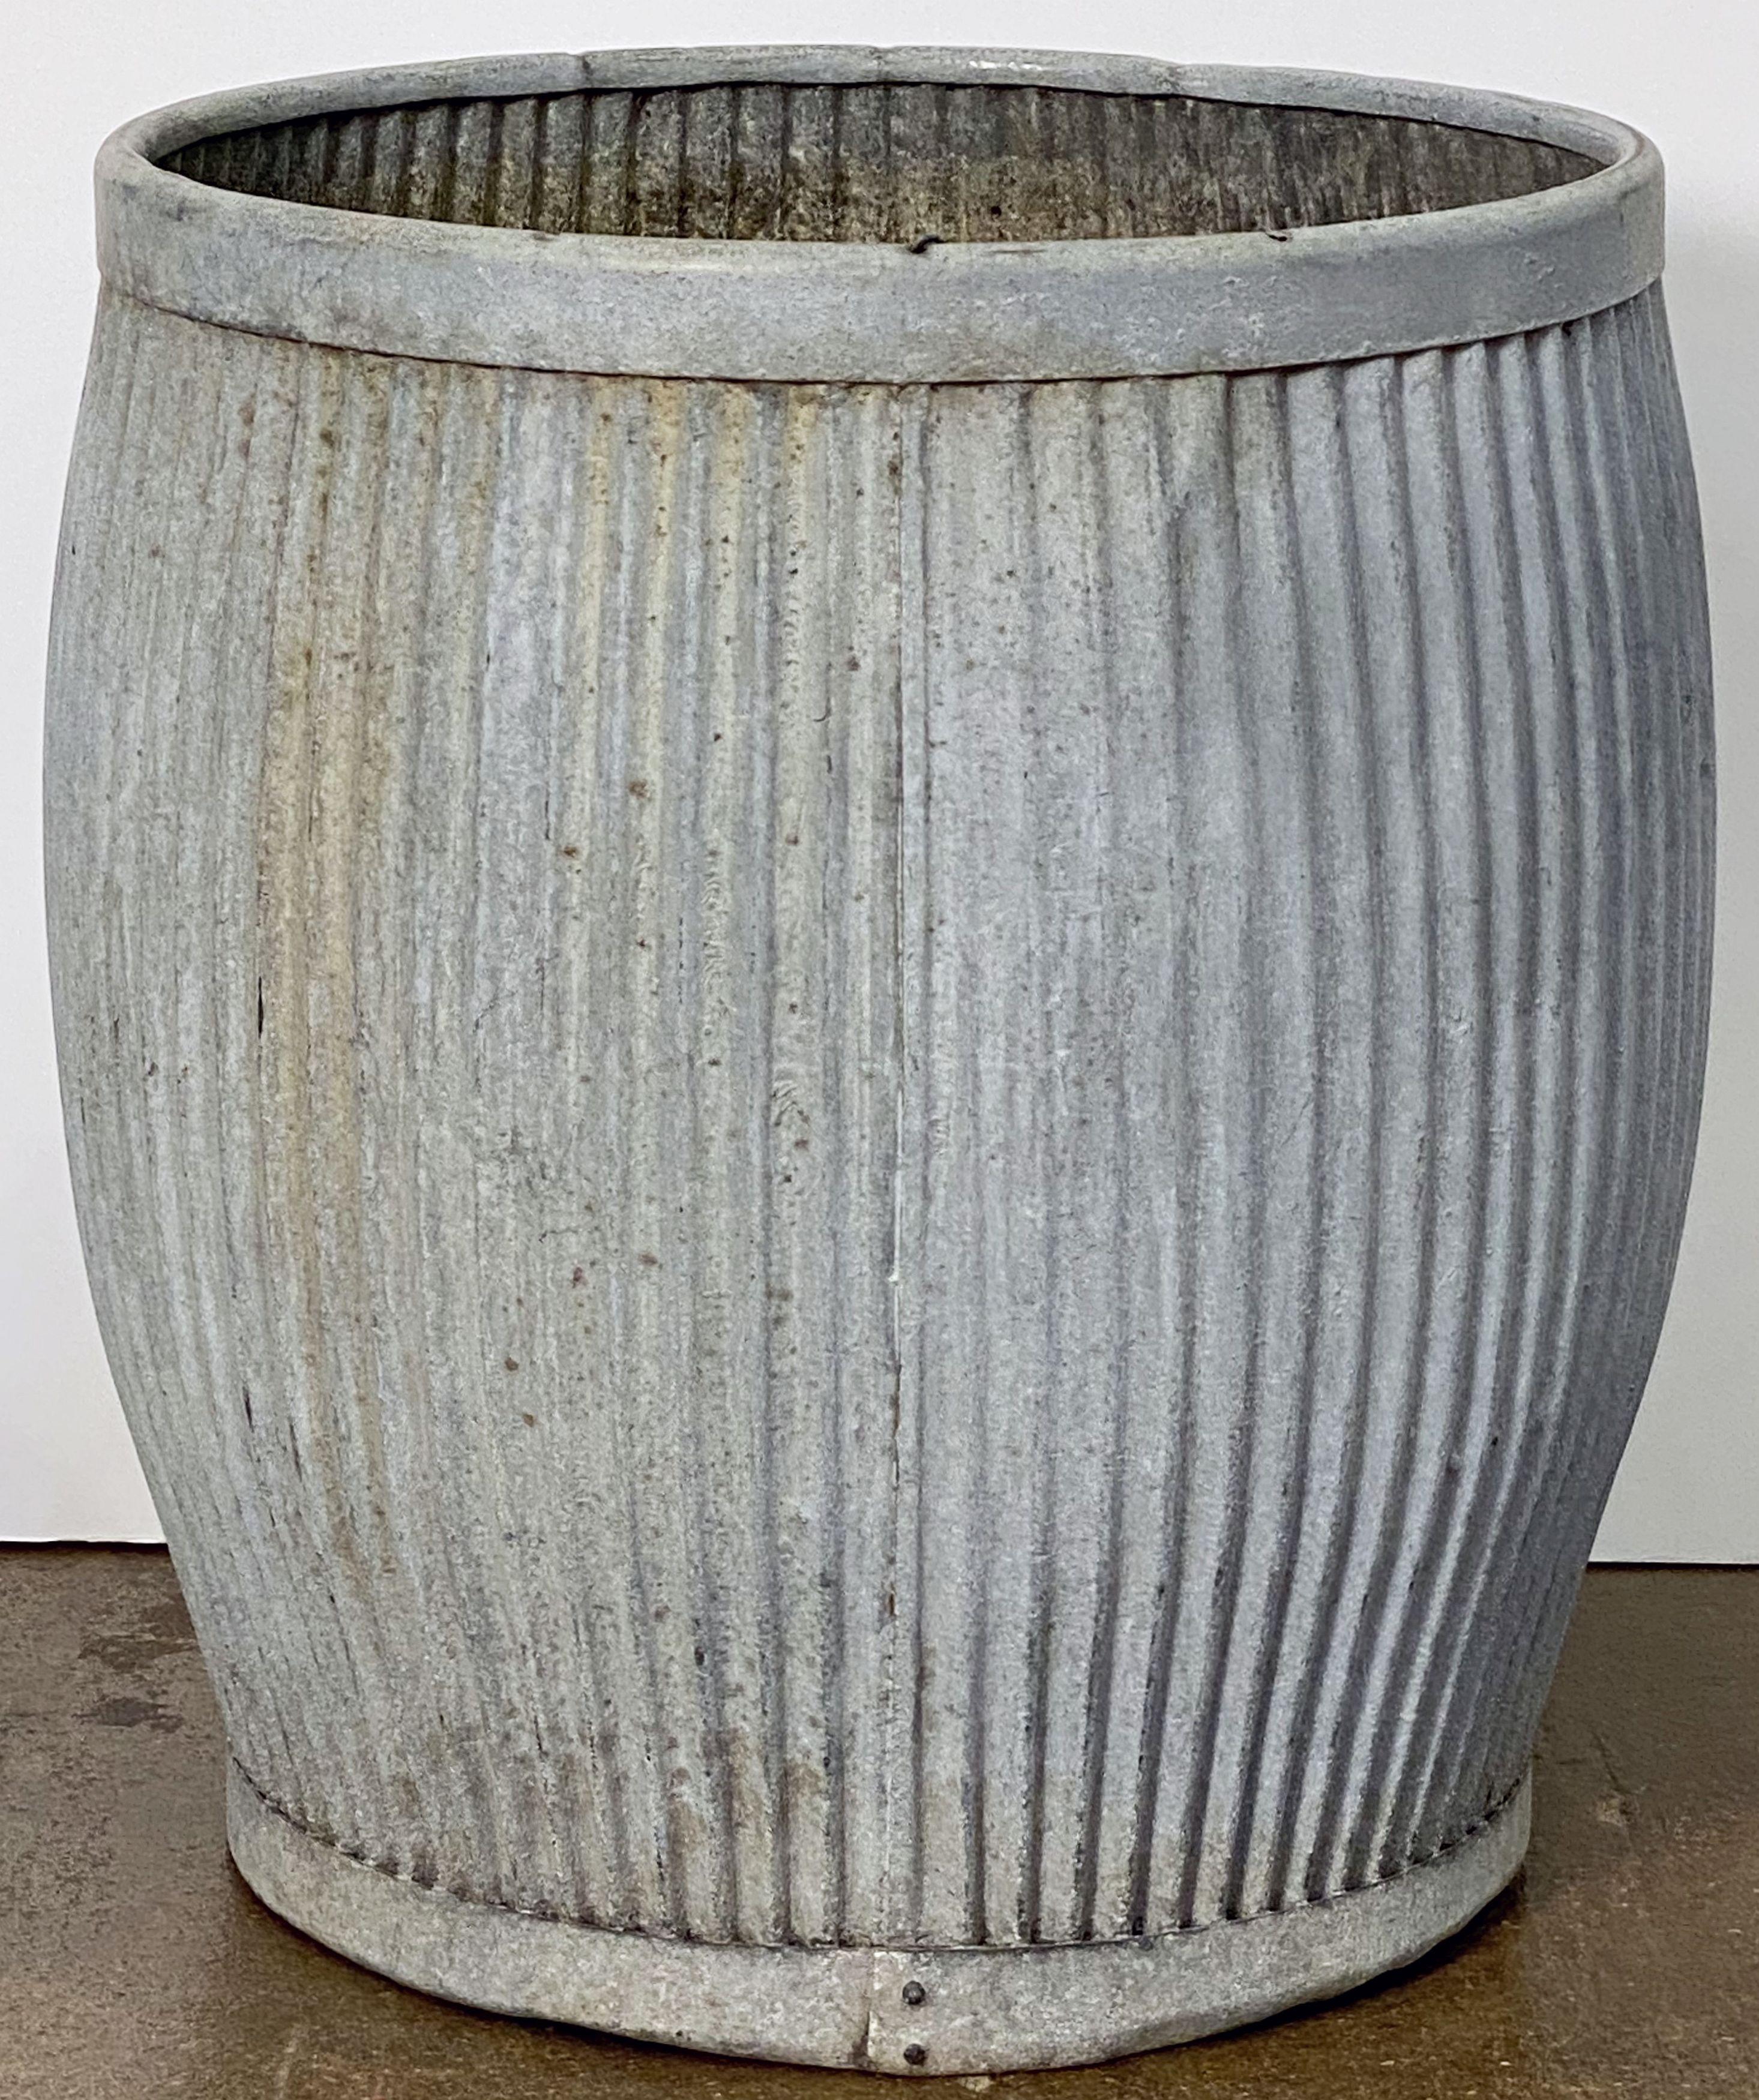 English Garden Pot or Dolly Tub Planter of Zinc 5